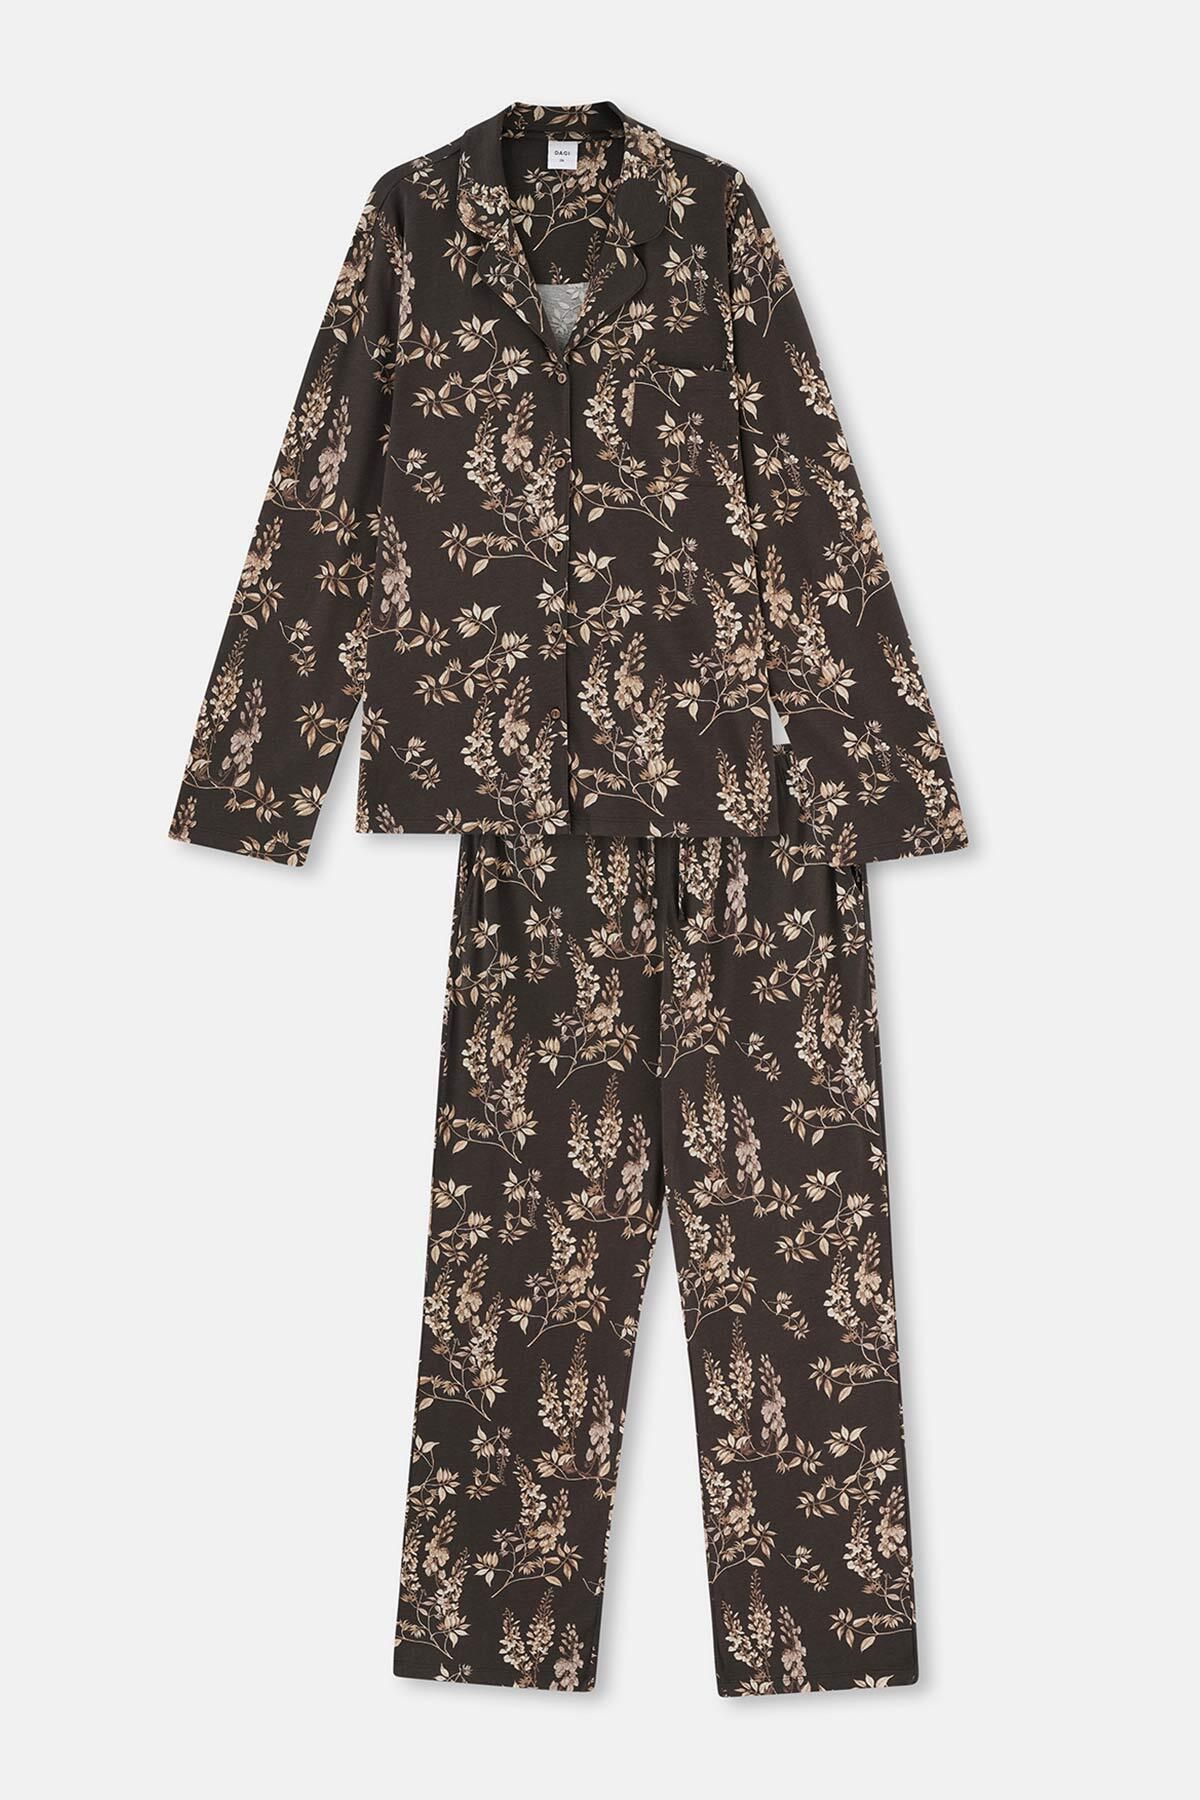 Dagi Koyu Kahve Metraj Baskılı Plus Size Pijama Takımı